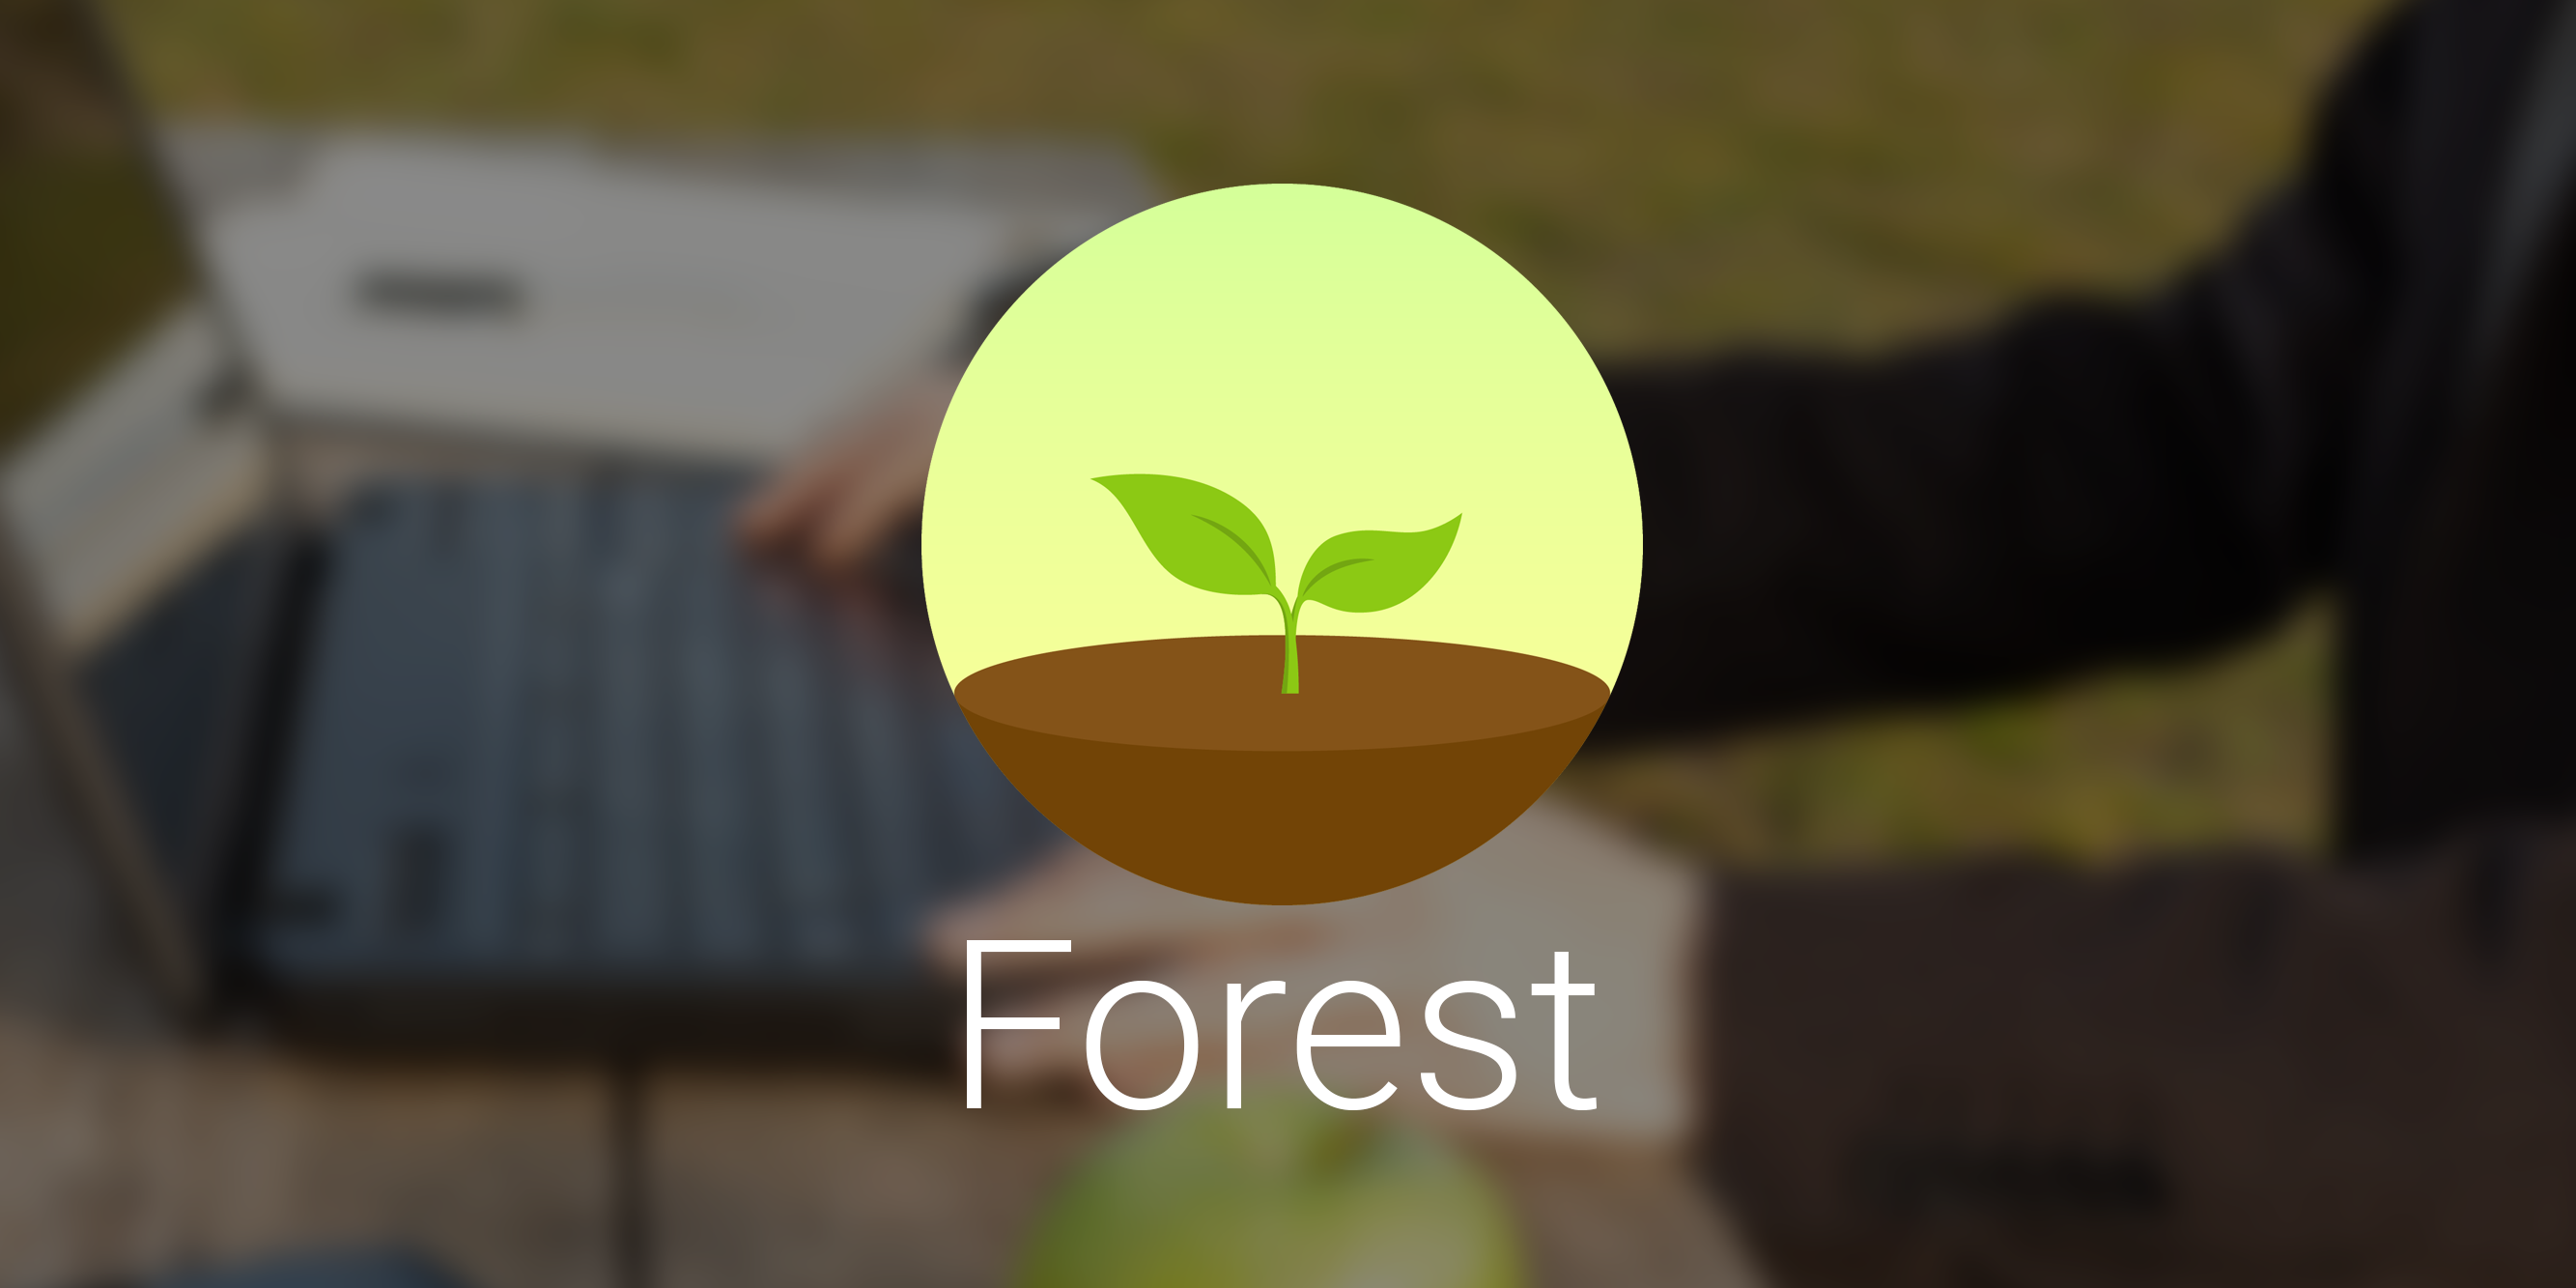 Forest: мобильное приложение для борьбы с прокрастинацией